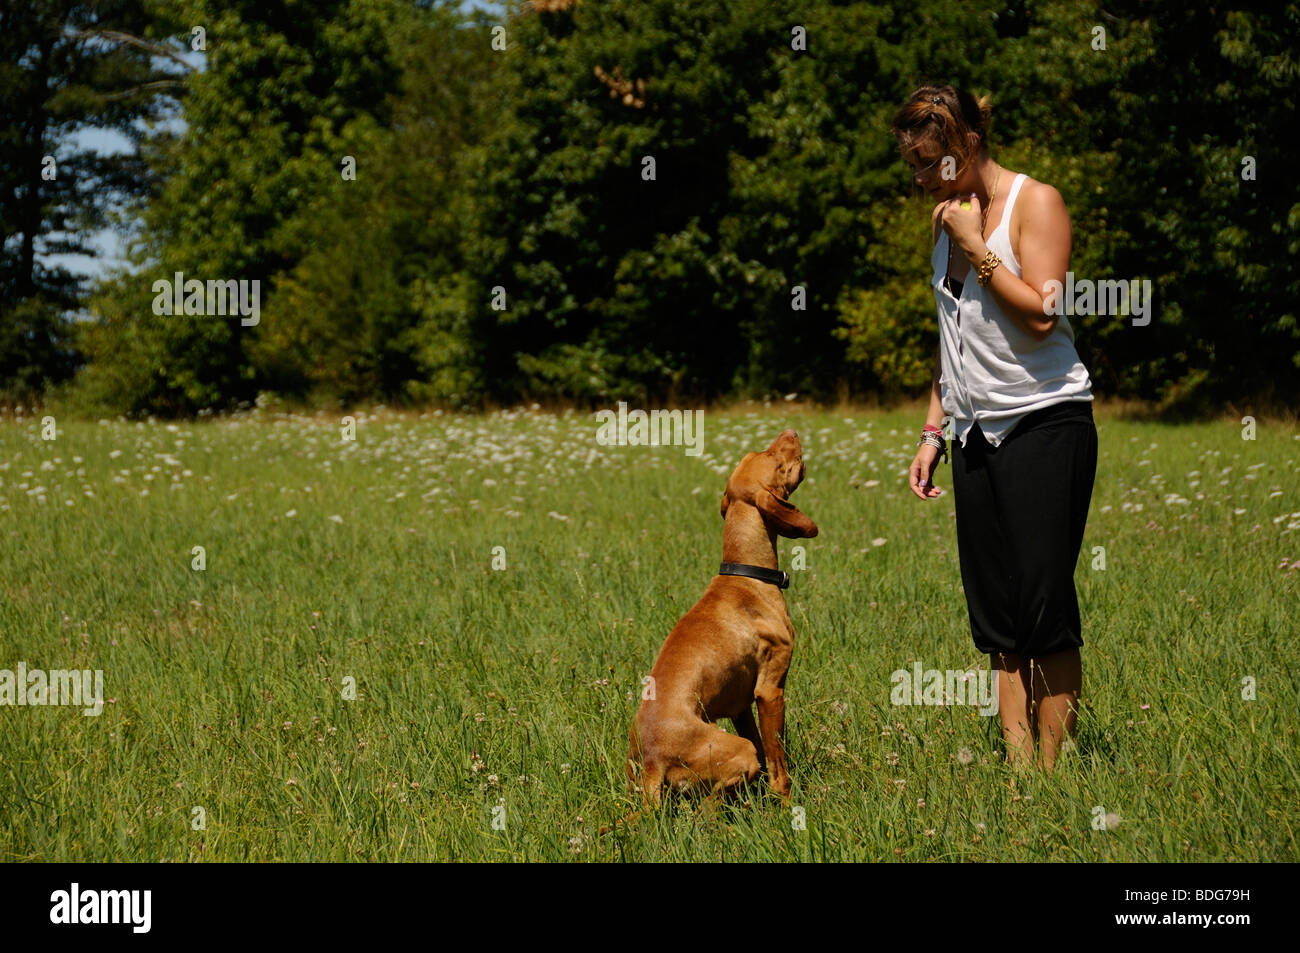 Stock Photo de una adolescente formación a su perro. Foto de stock